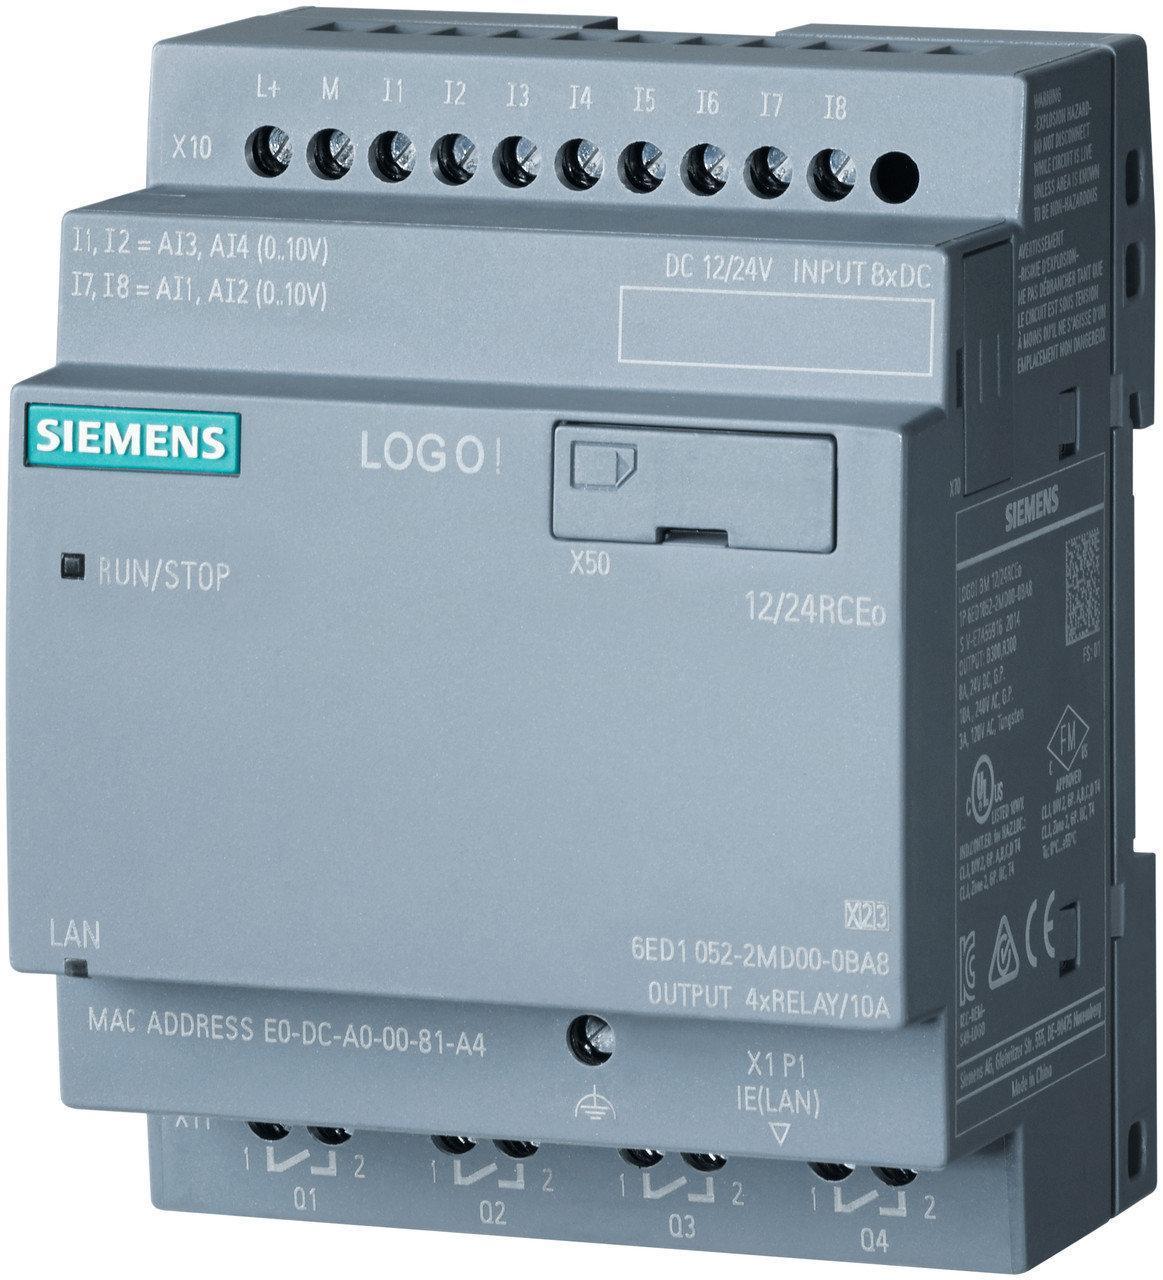 Логический модуль Siemens LOGO! Pure 24RCEo: питание =24 В: DI 8 =24 В; DO 4 реле, до 10 А на контакт